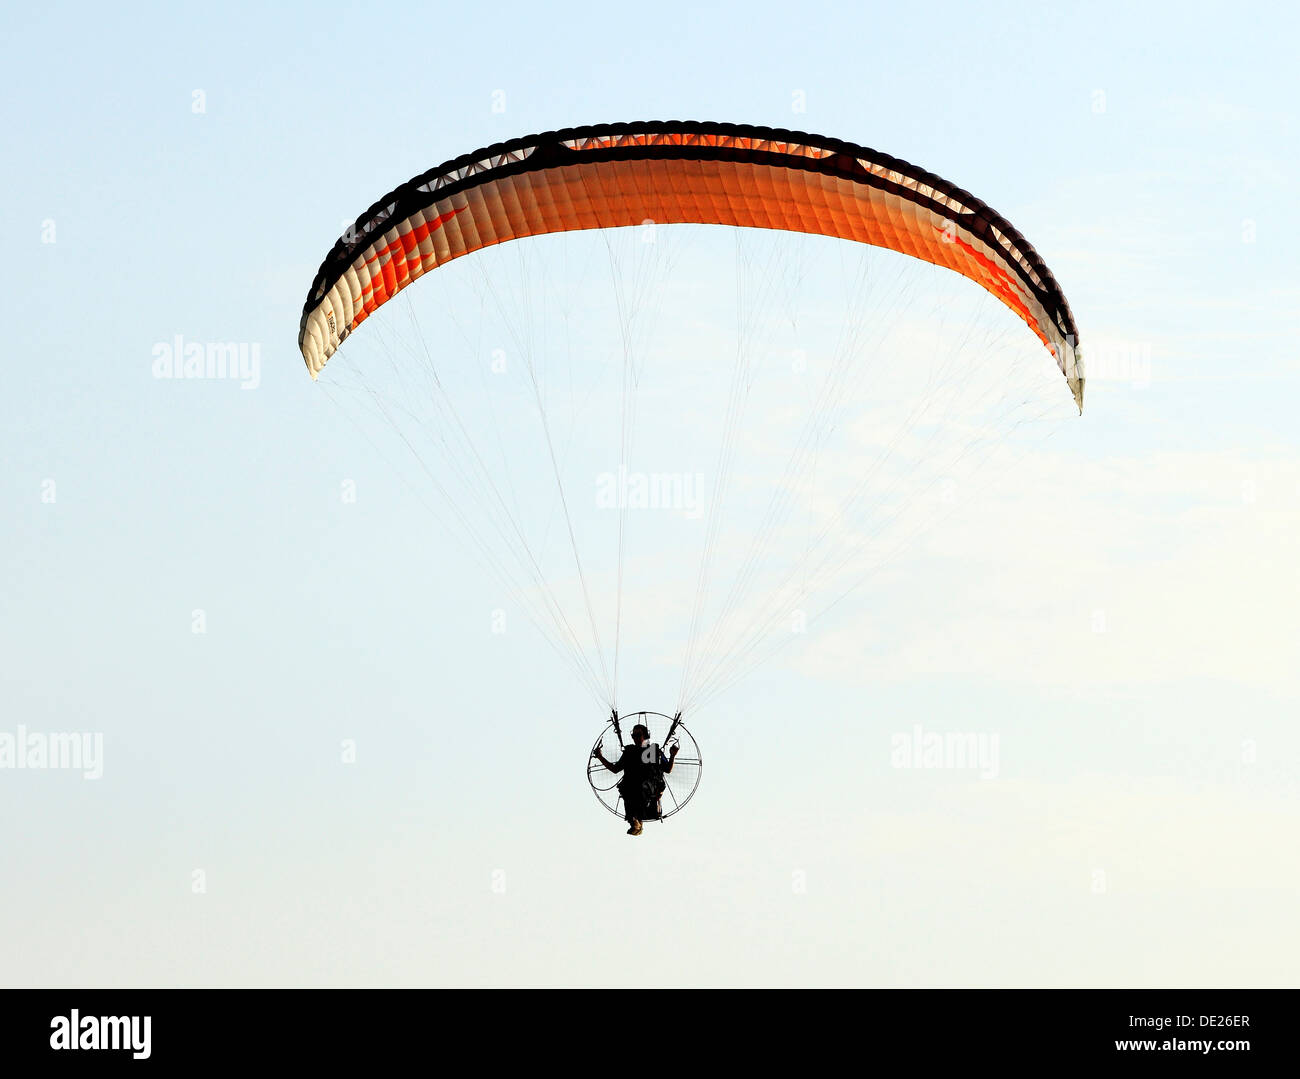 Hängegleiter Mann Drachenfliegen fliegen Freizeit Aktivität UK Gleitschirmen Stockfoto